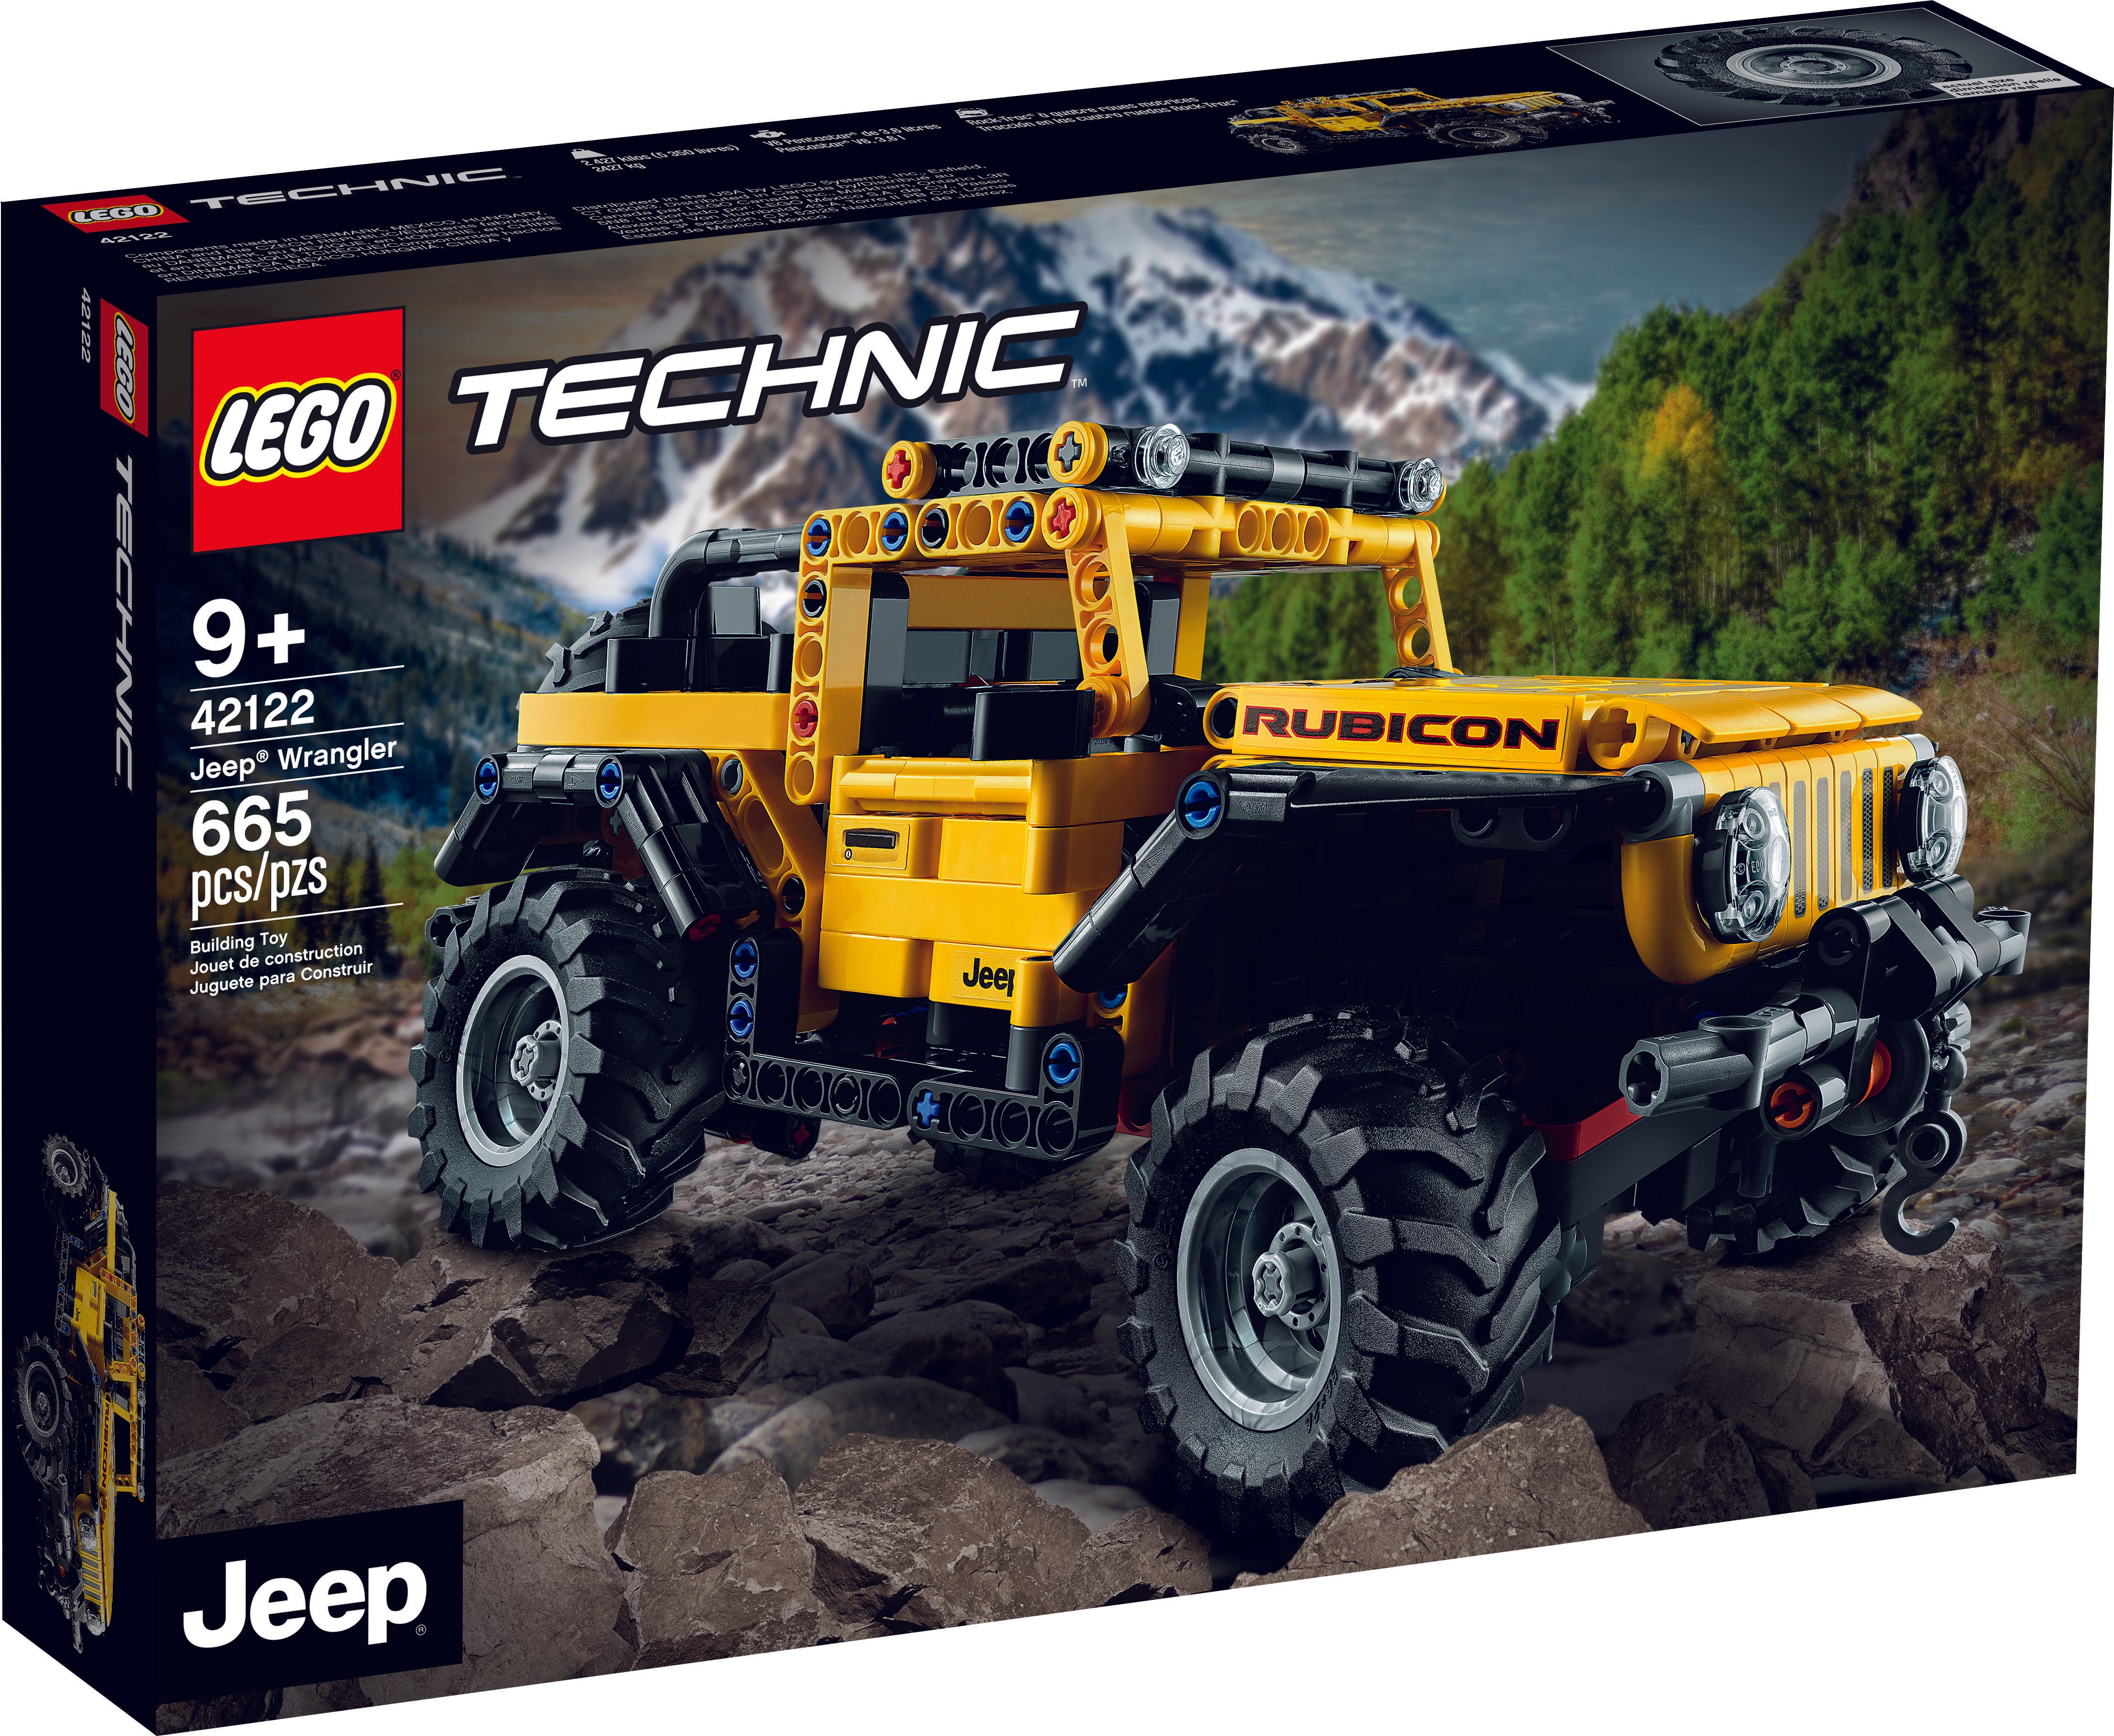 LEGO: Technic - Jeep® Wrangler